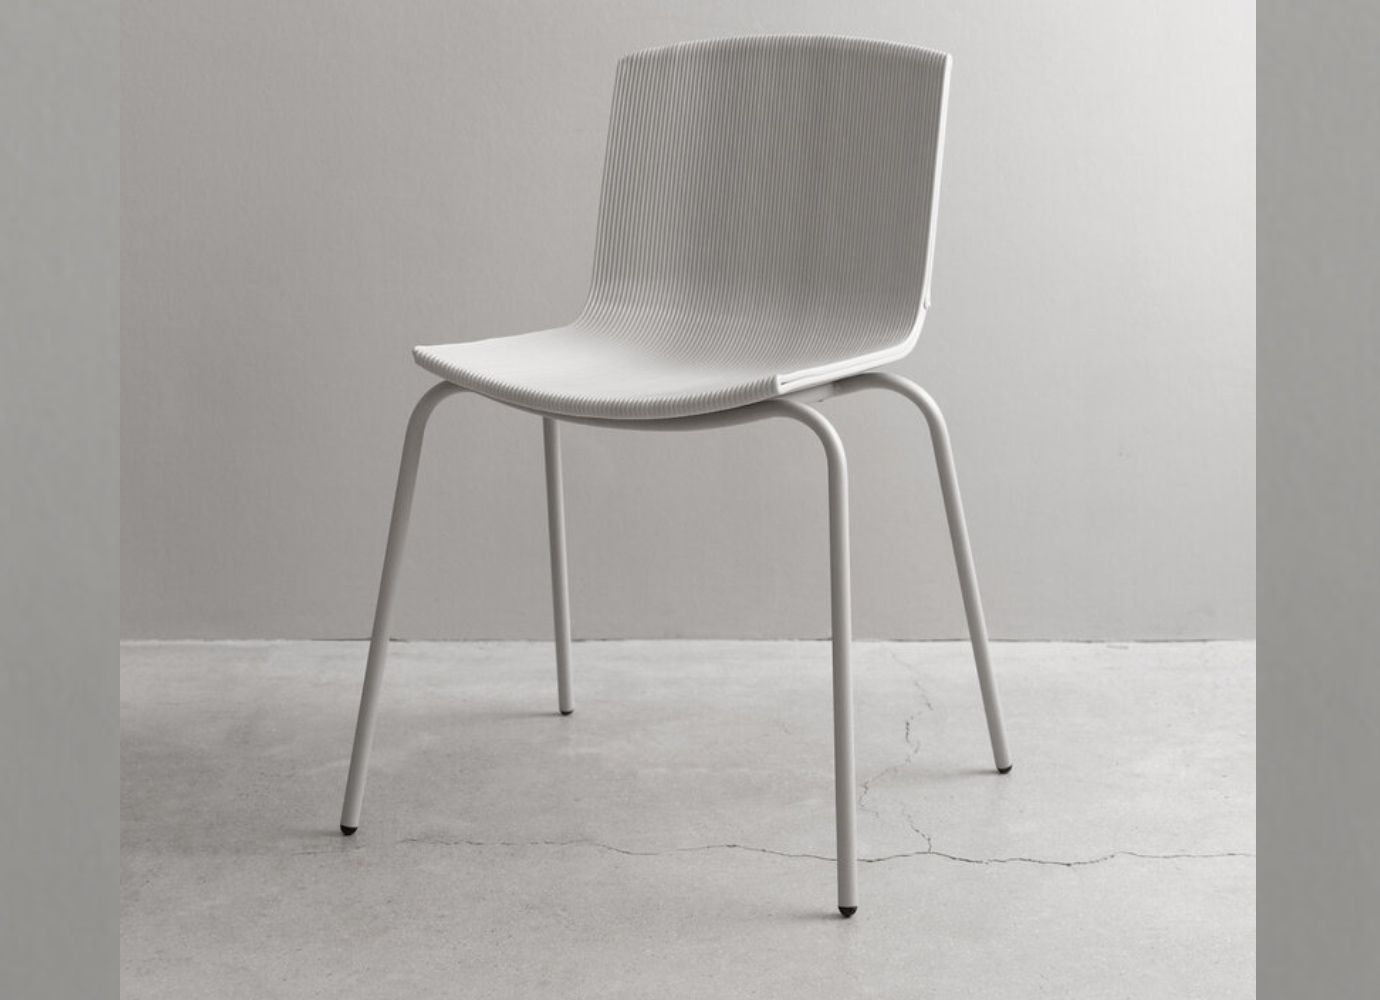 Izgalmas és fenntartható – Joghurtospohárból készülő székek